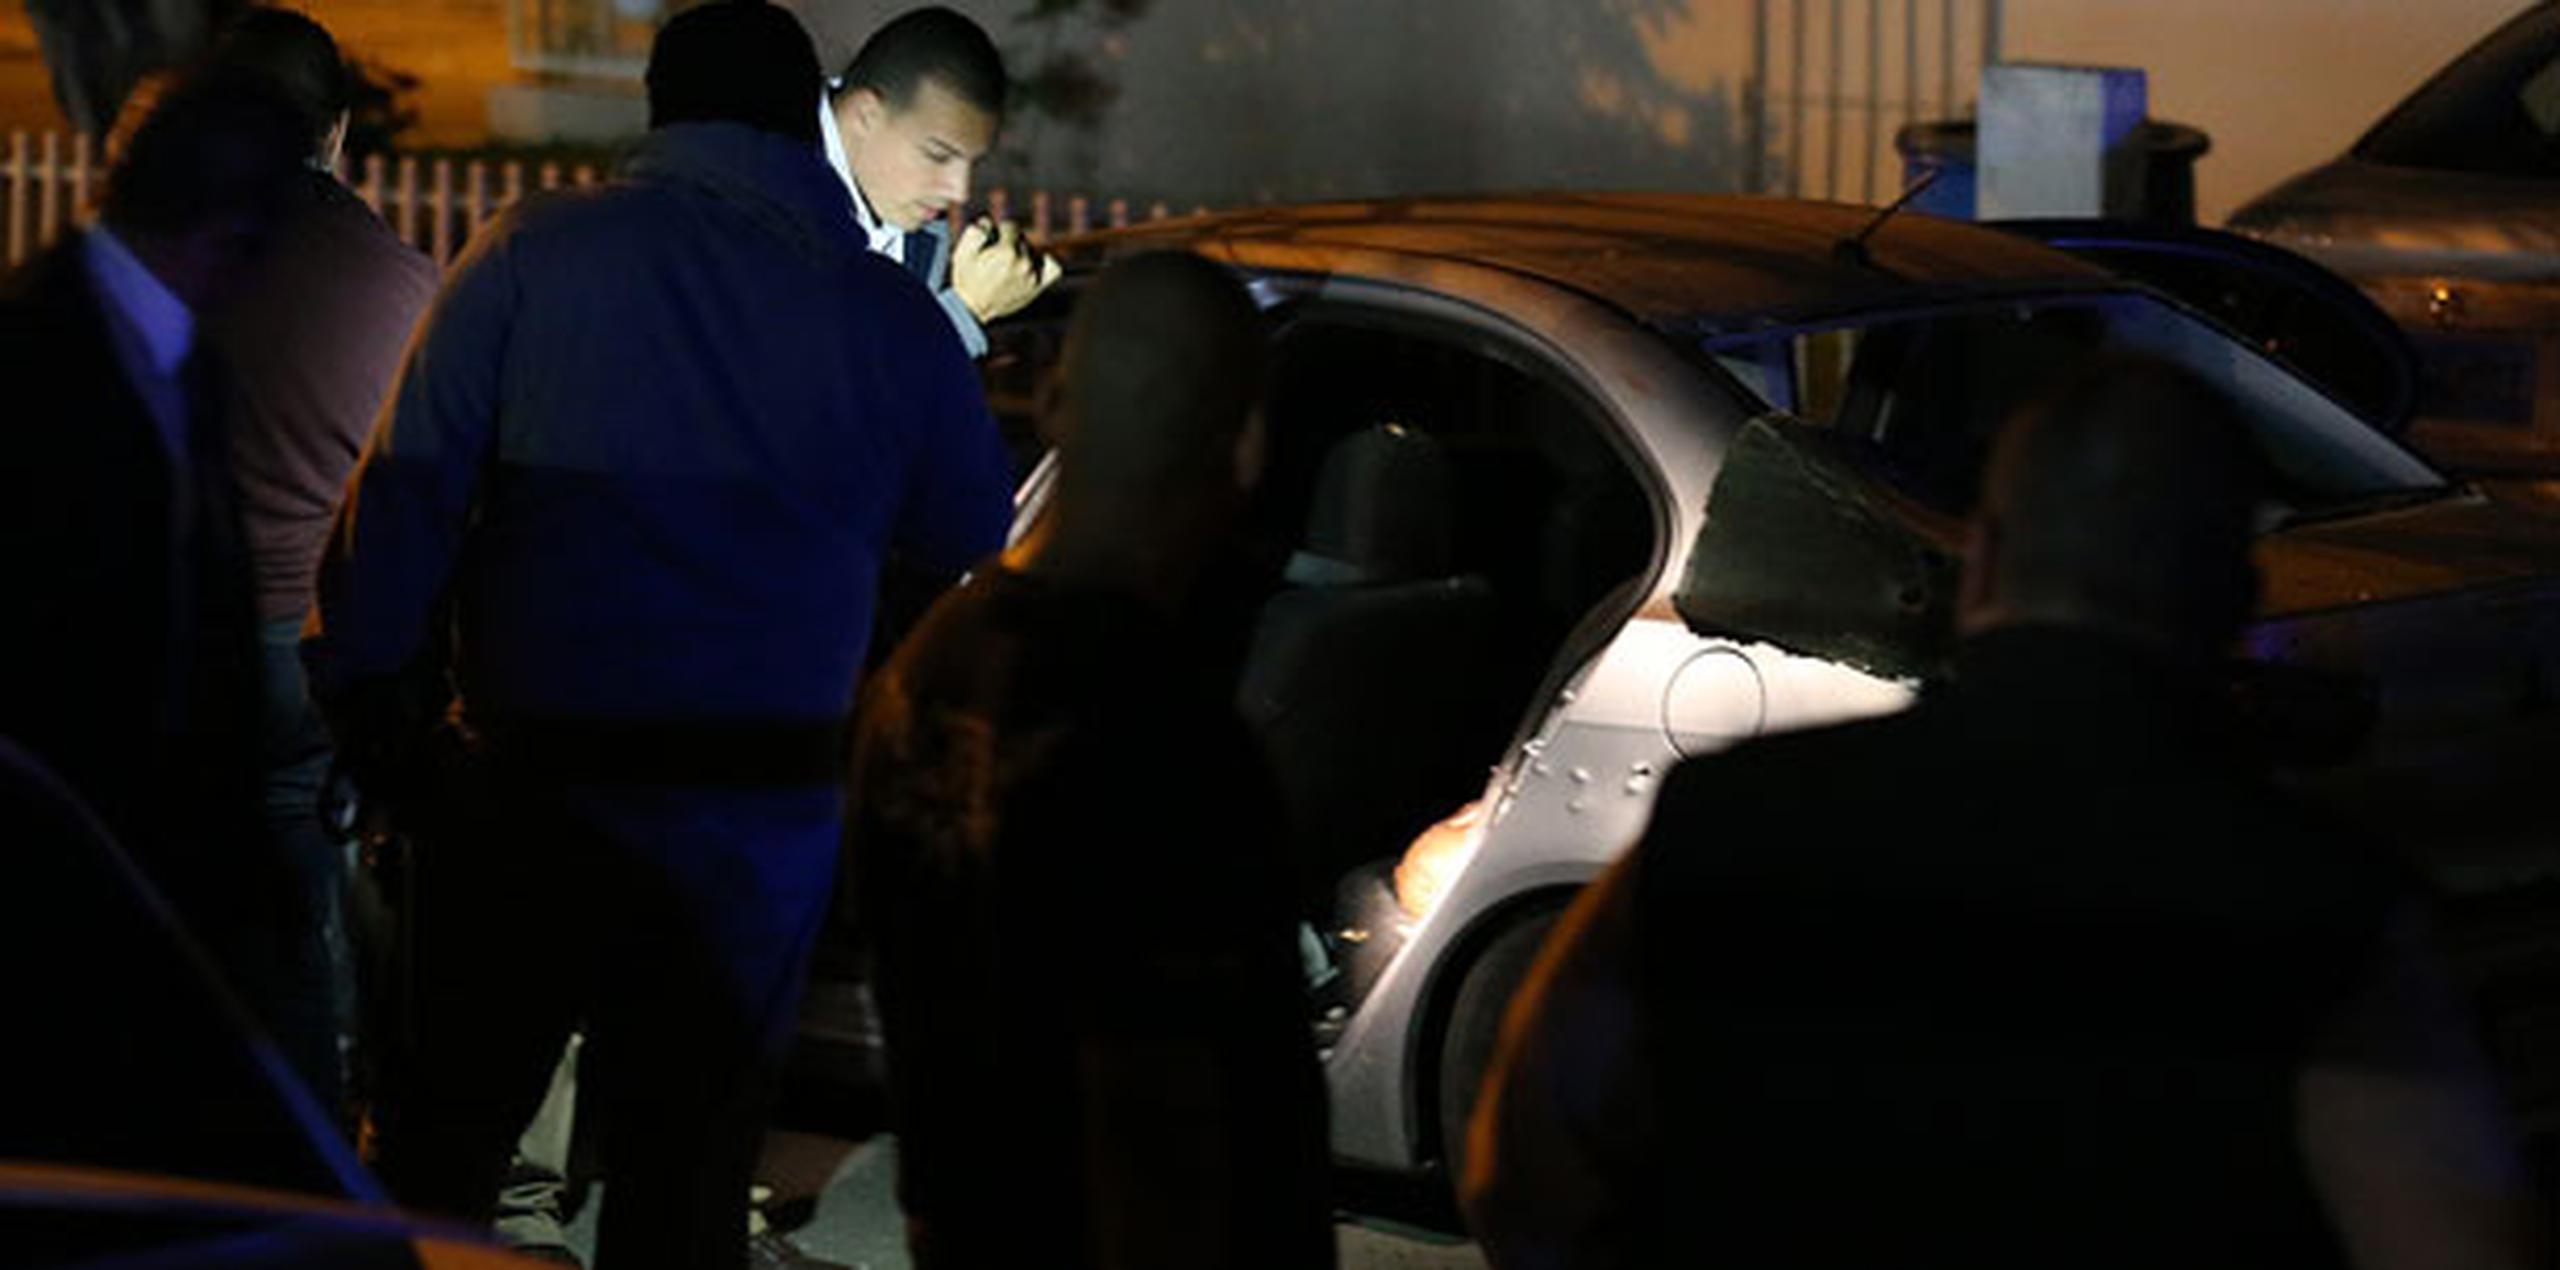 Las víctimas fueron tiroteadas mientras iban a bordo de un carro por la carretera  PR-183, en un área conocida como Parque Las Mercedes. (jose.candelaria@gfrmedia.com)